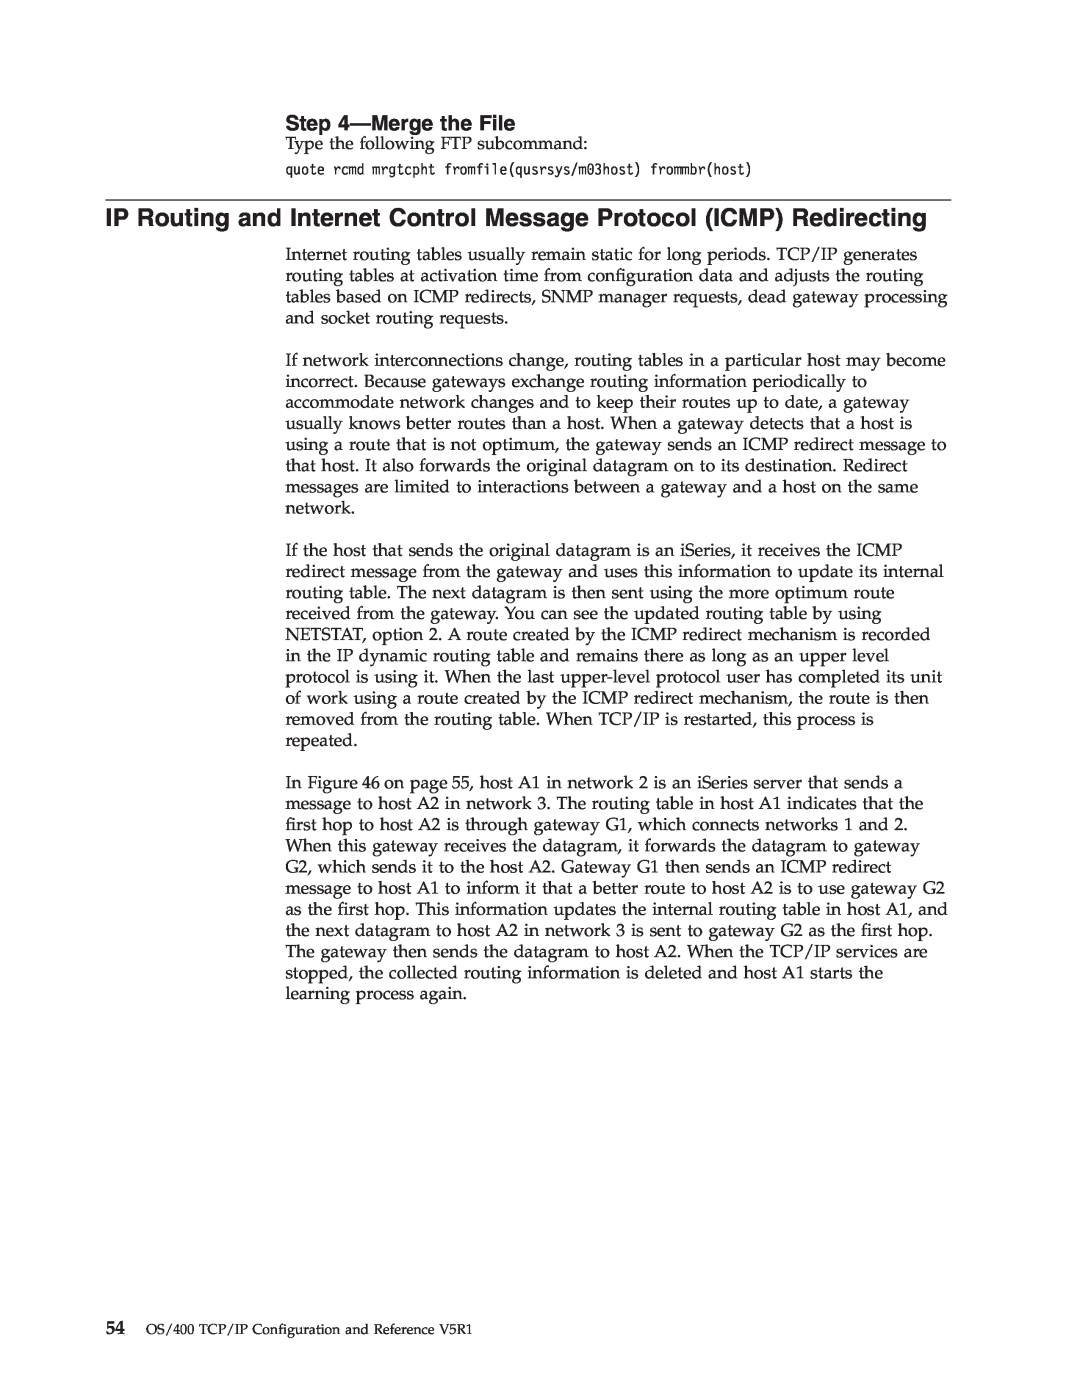 IBM SC41-5420-04 manual Mergethe File 